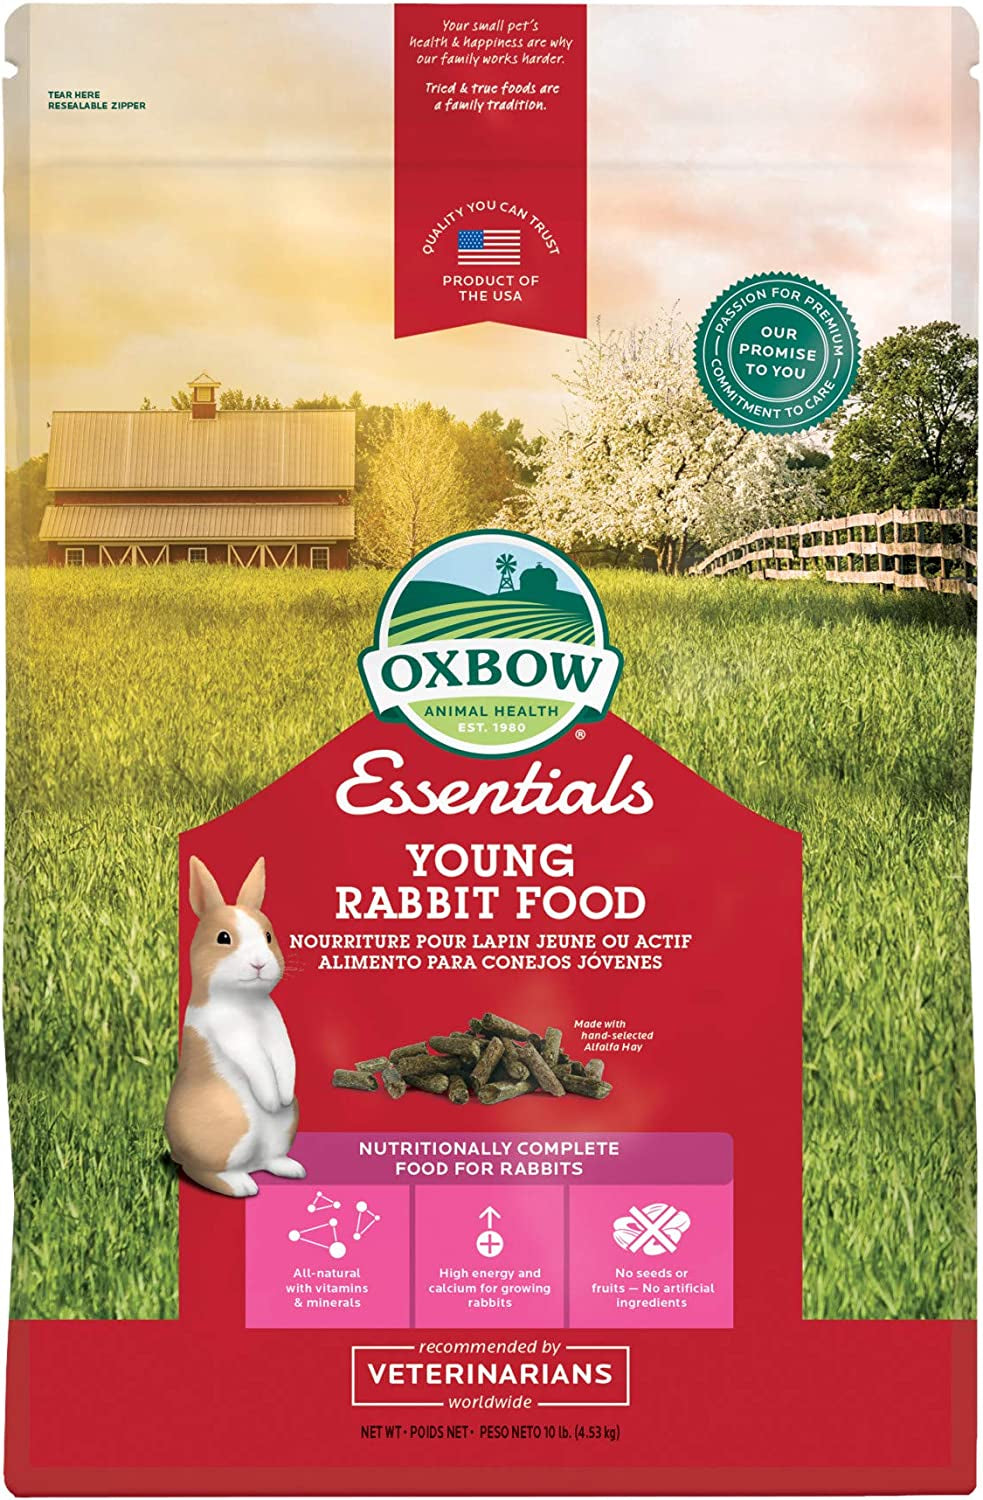 Oxbow Essentials Young Rabbit Food - All Natural Rabbit Pellets - 10 Lb.